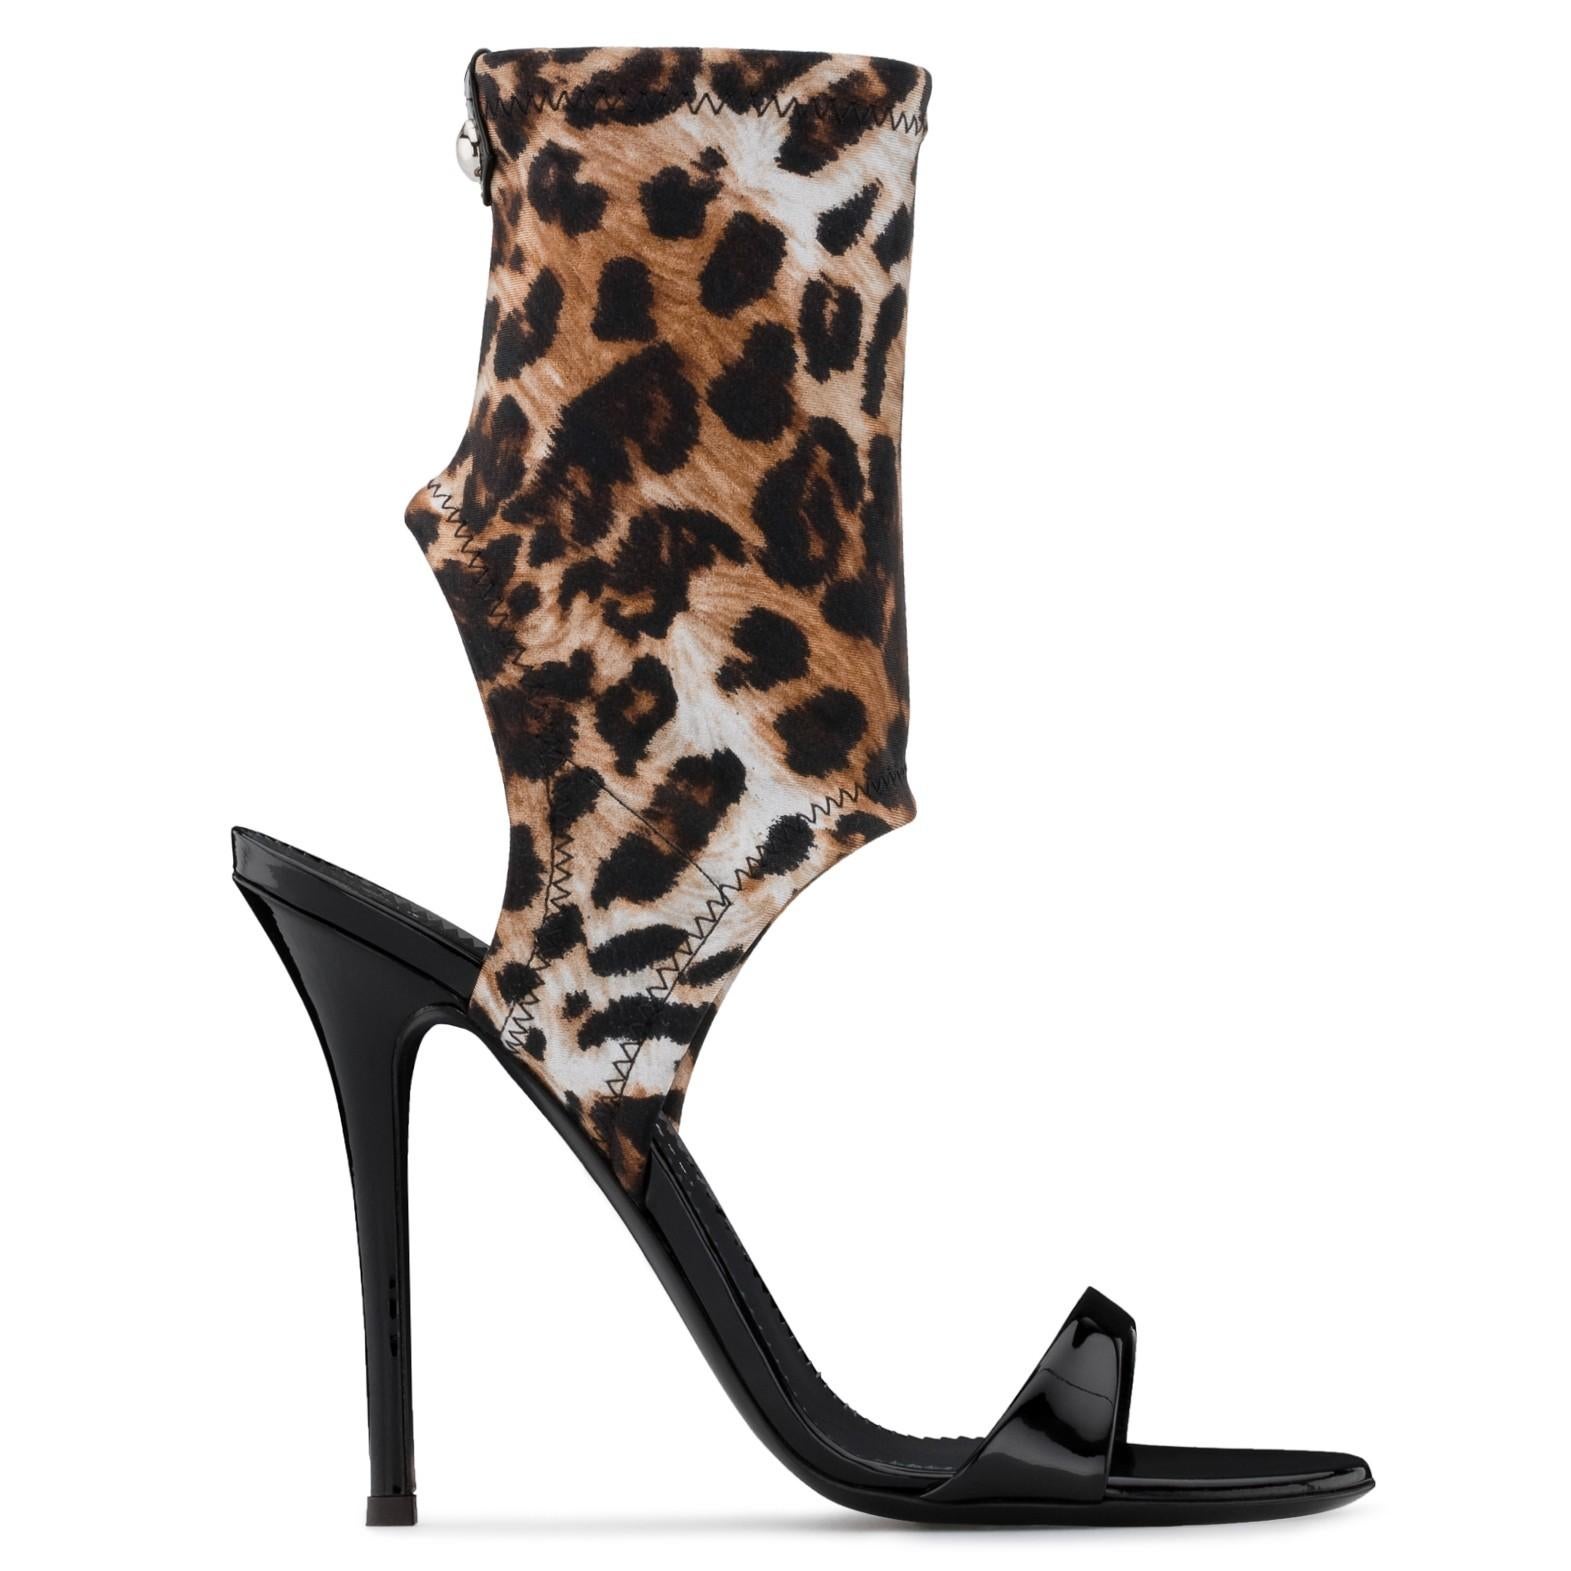 Women's Giuseppe Zanotti NEW Leopard Neoprene Sock Evening Boots Booties Heels in Box